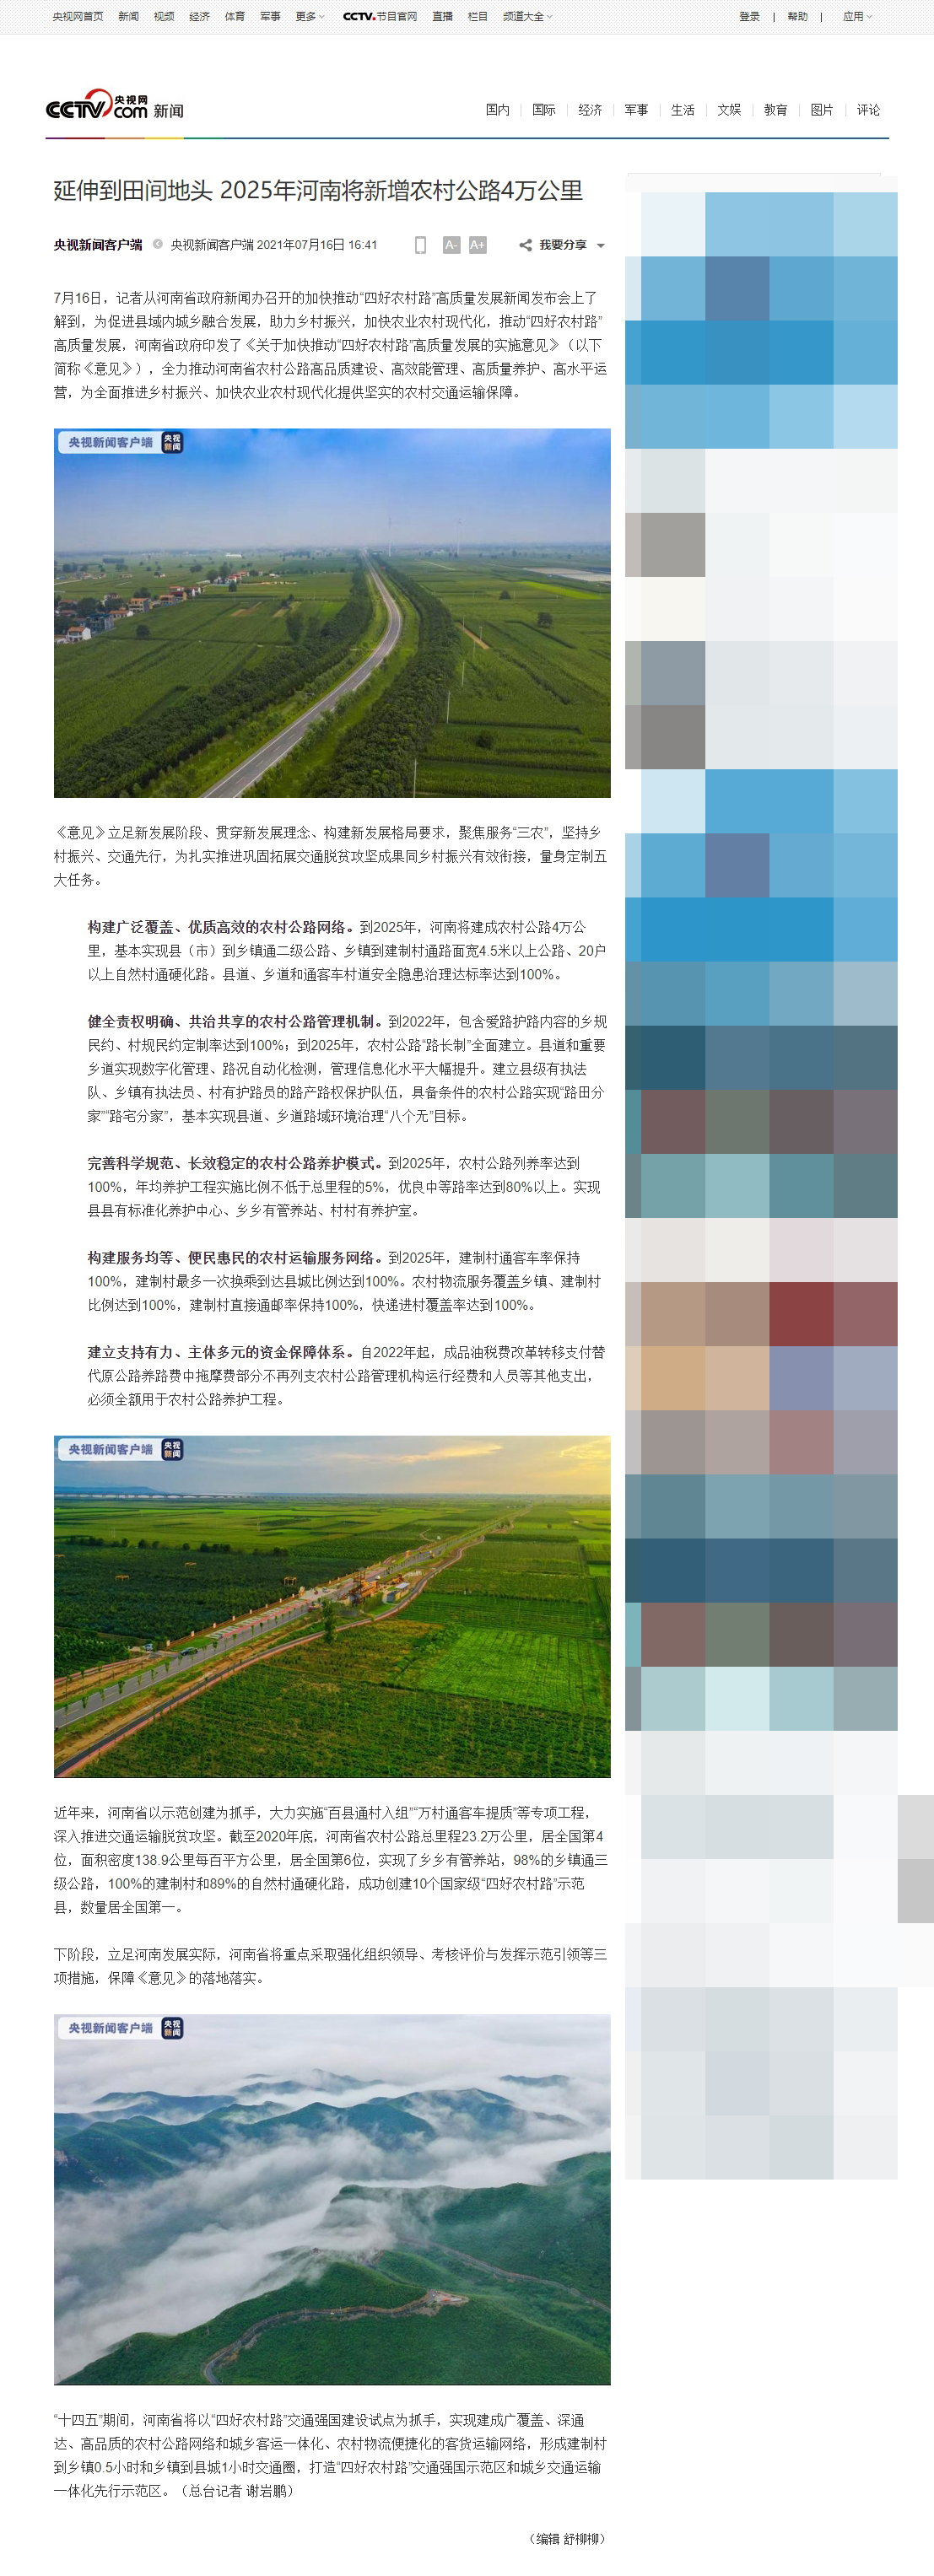 延伸到田间地头 2025年河南将新增农村公路4万公里